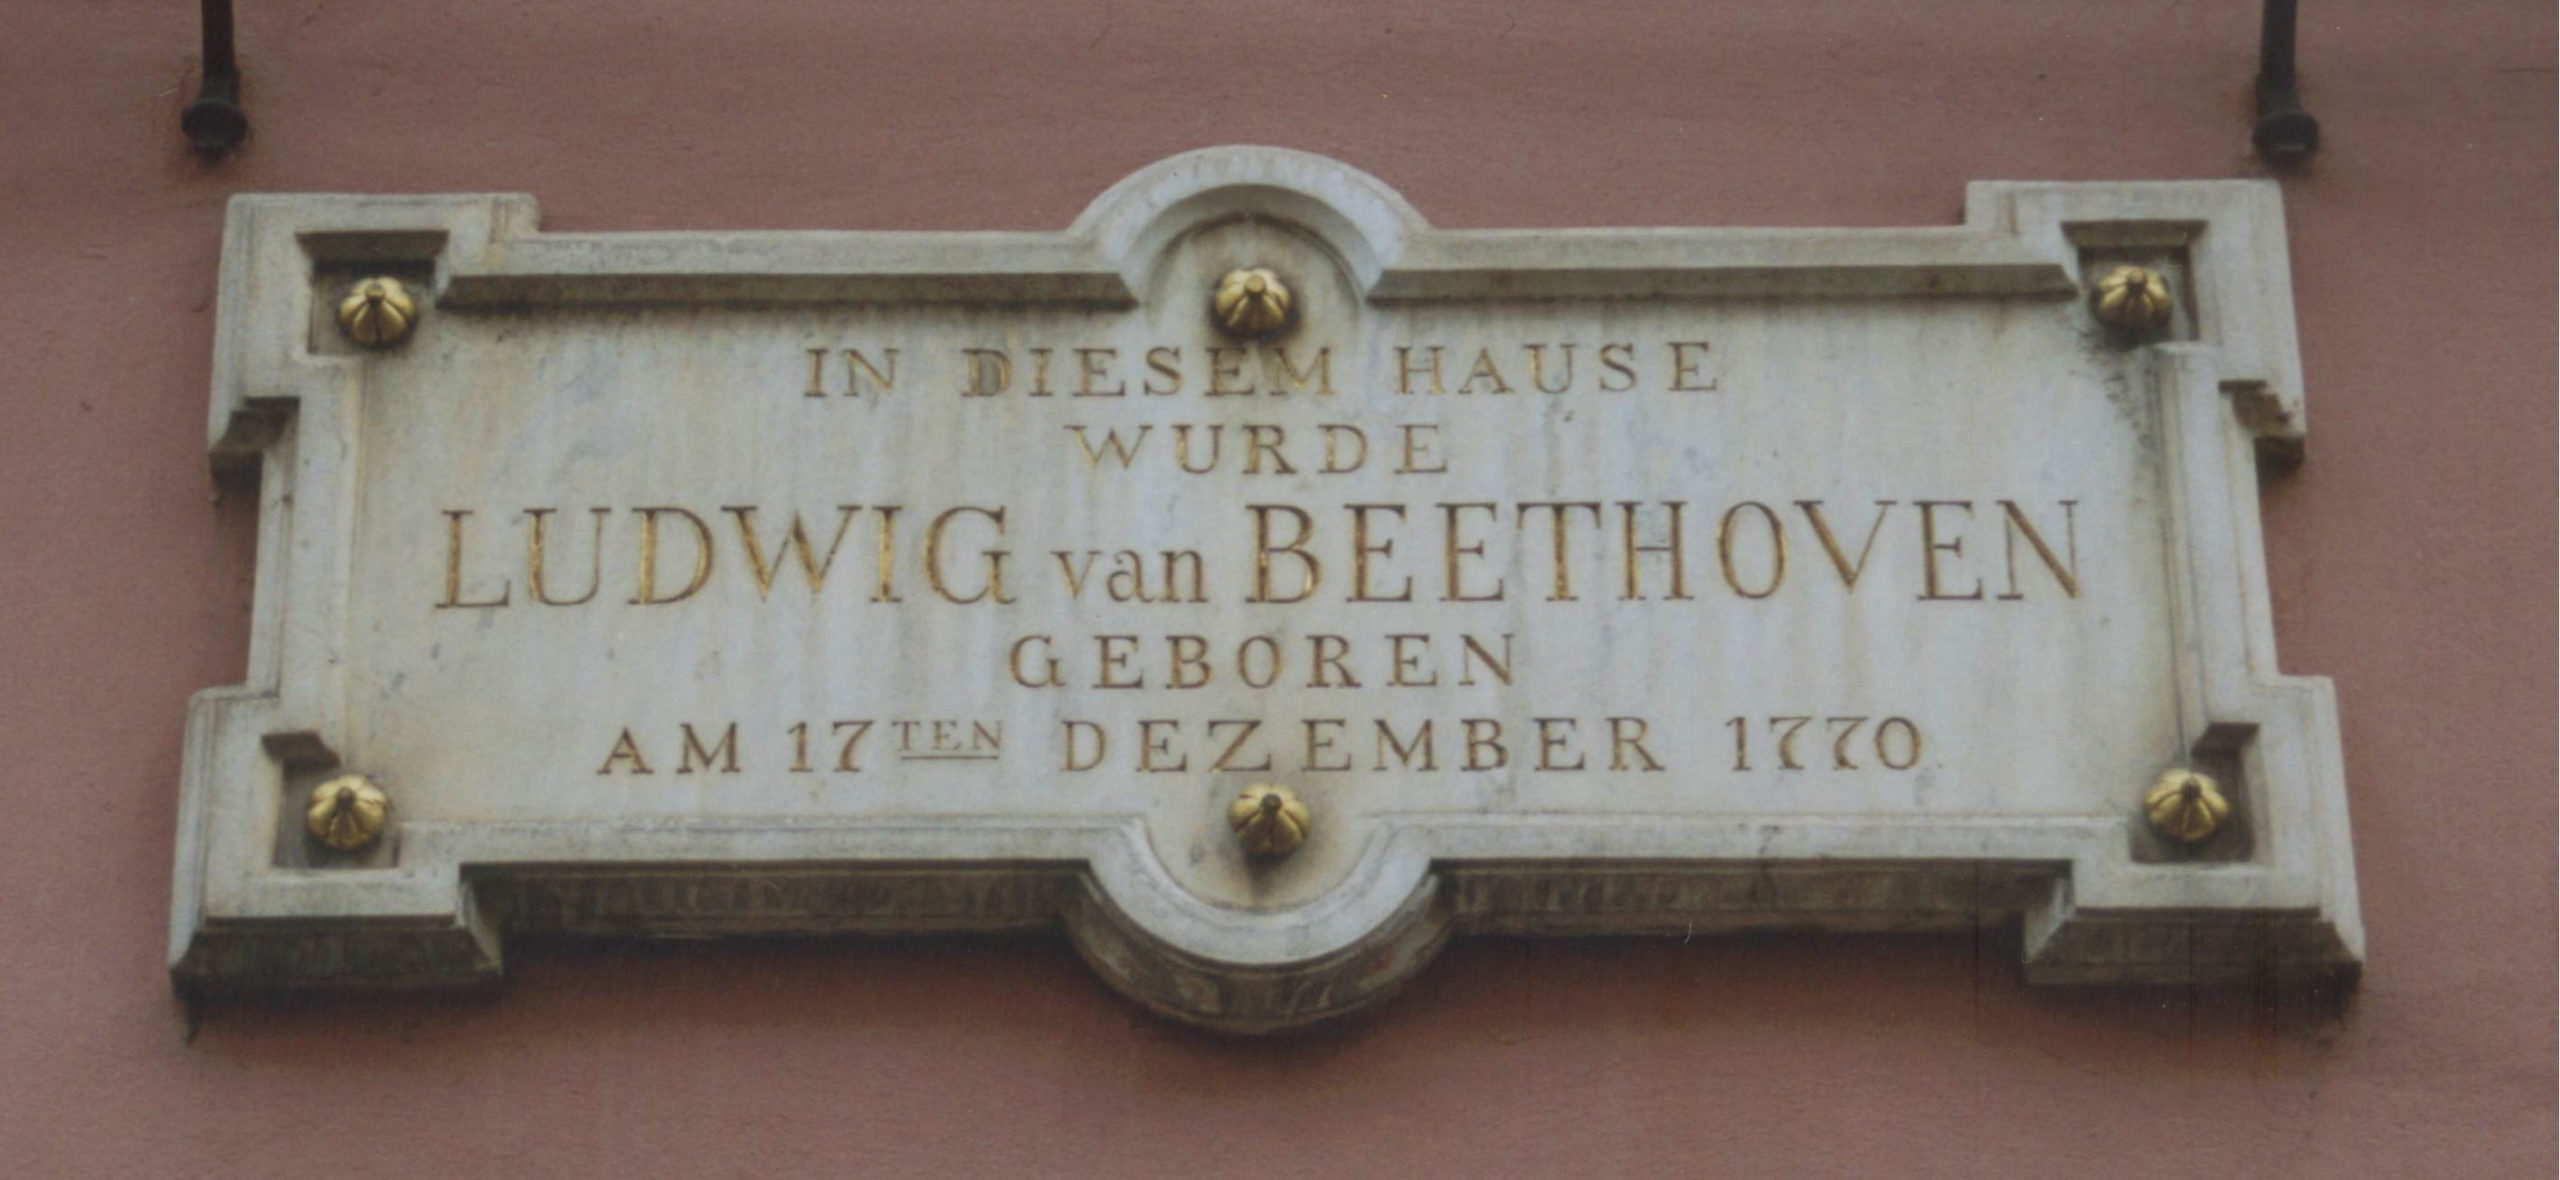 Beethoven est né il y a 250 ans